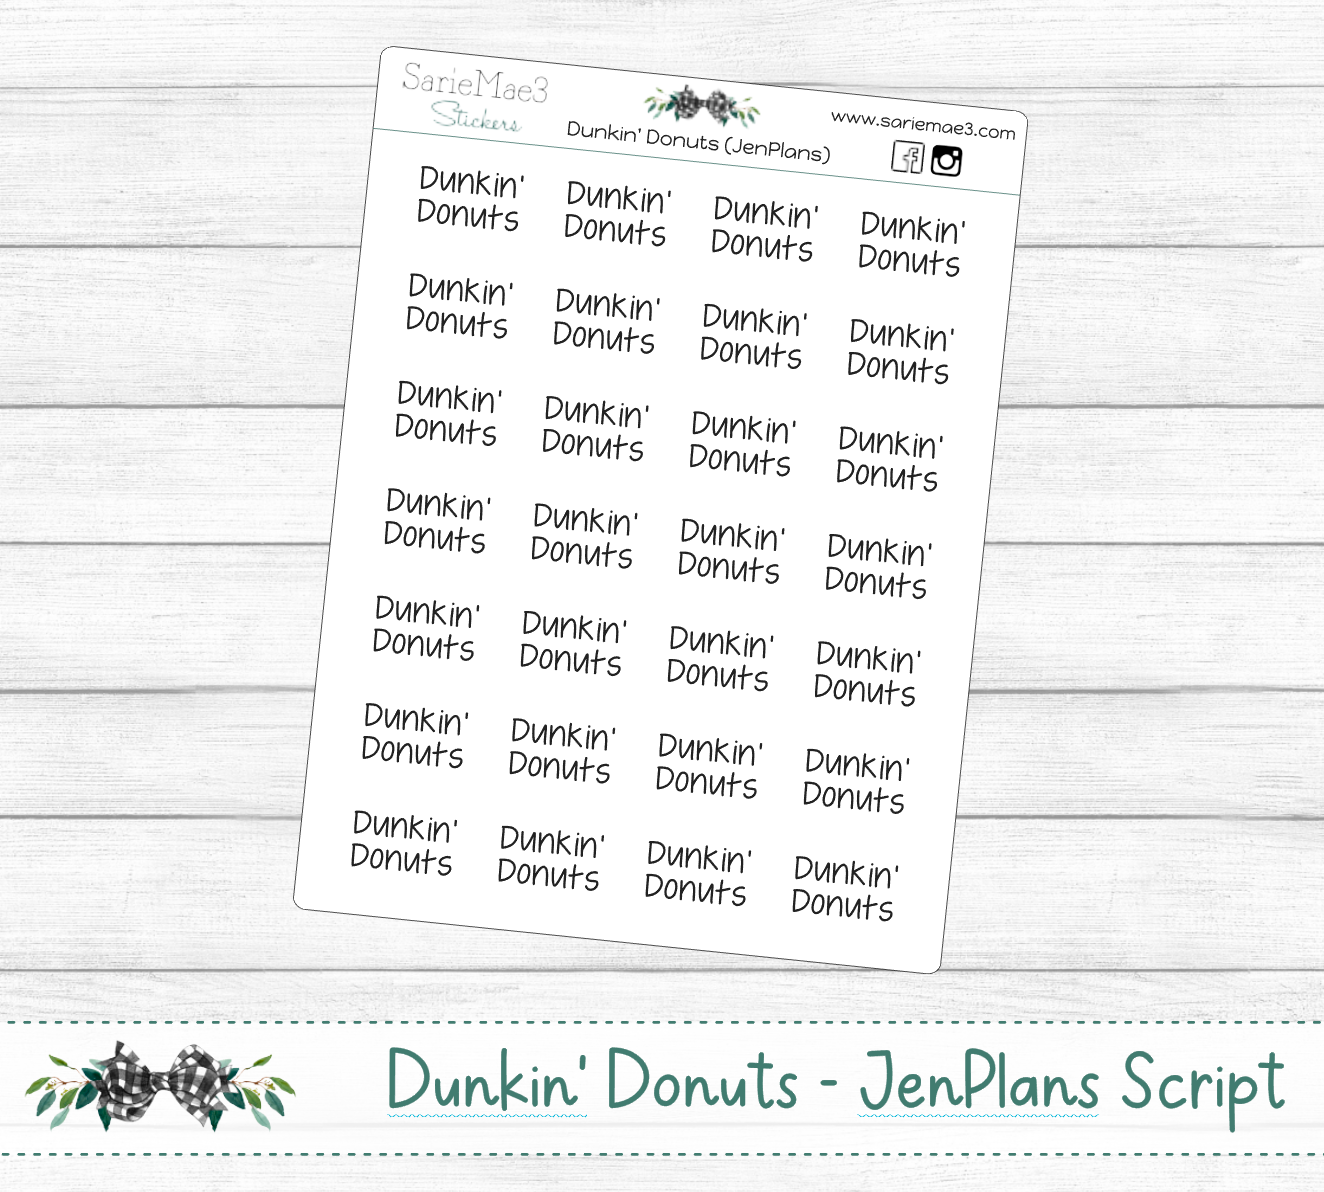 Dunkin' Donuts (JenPlans)